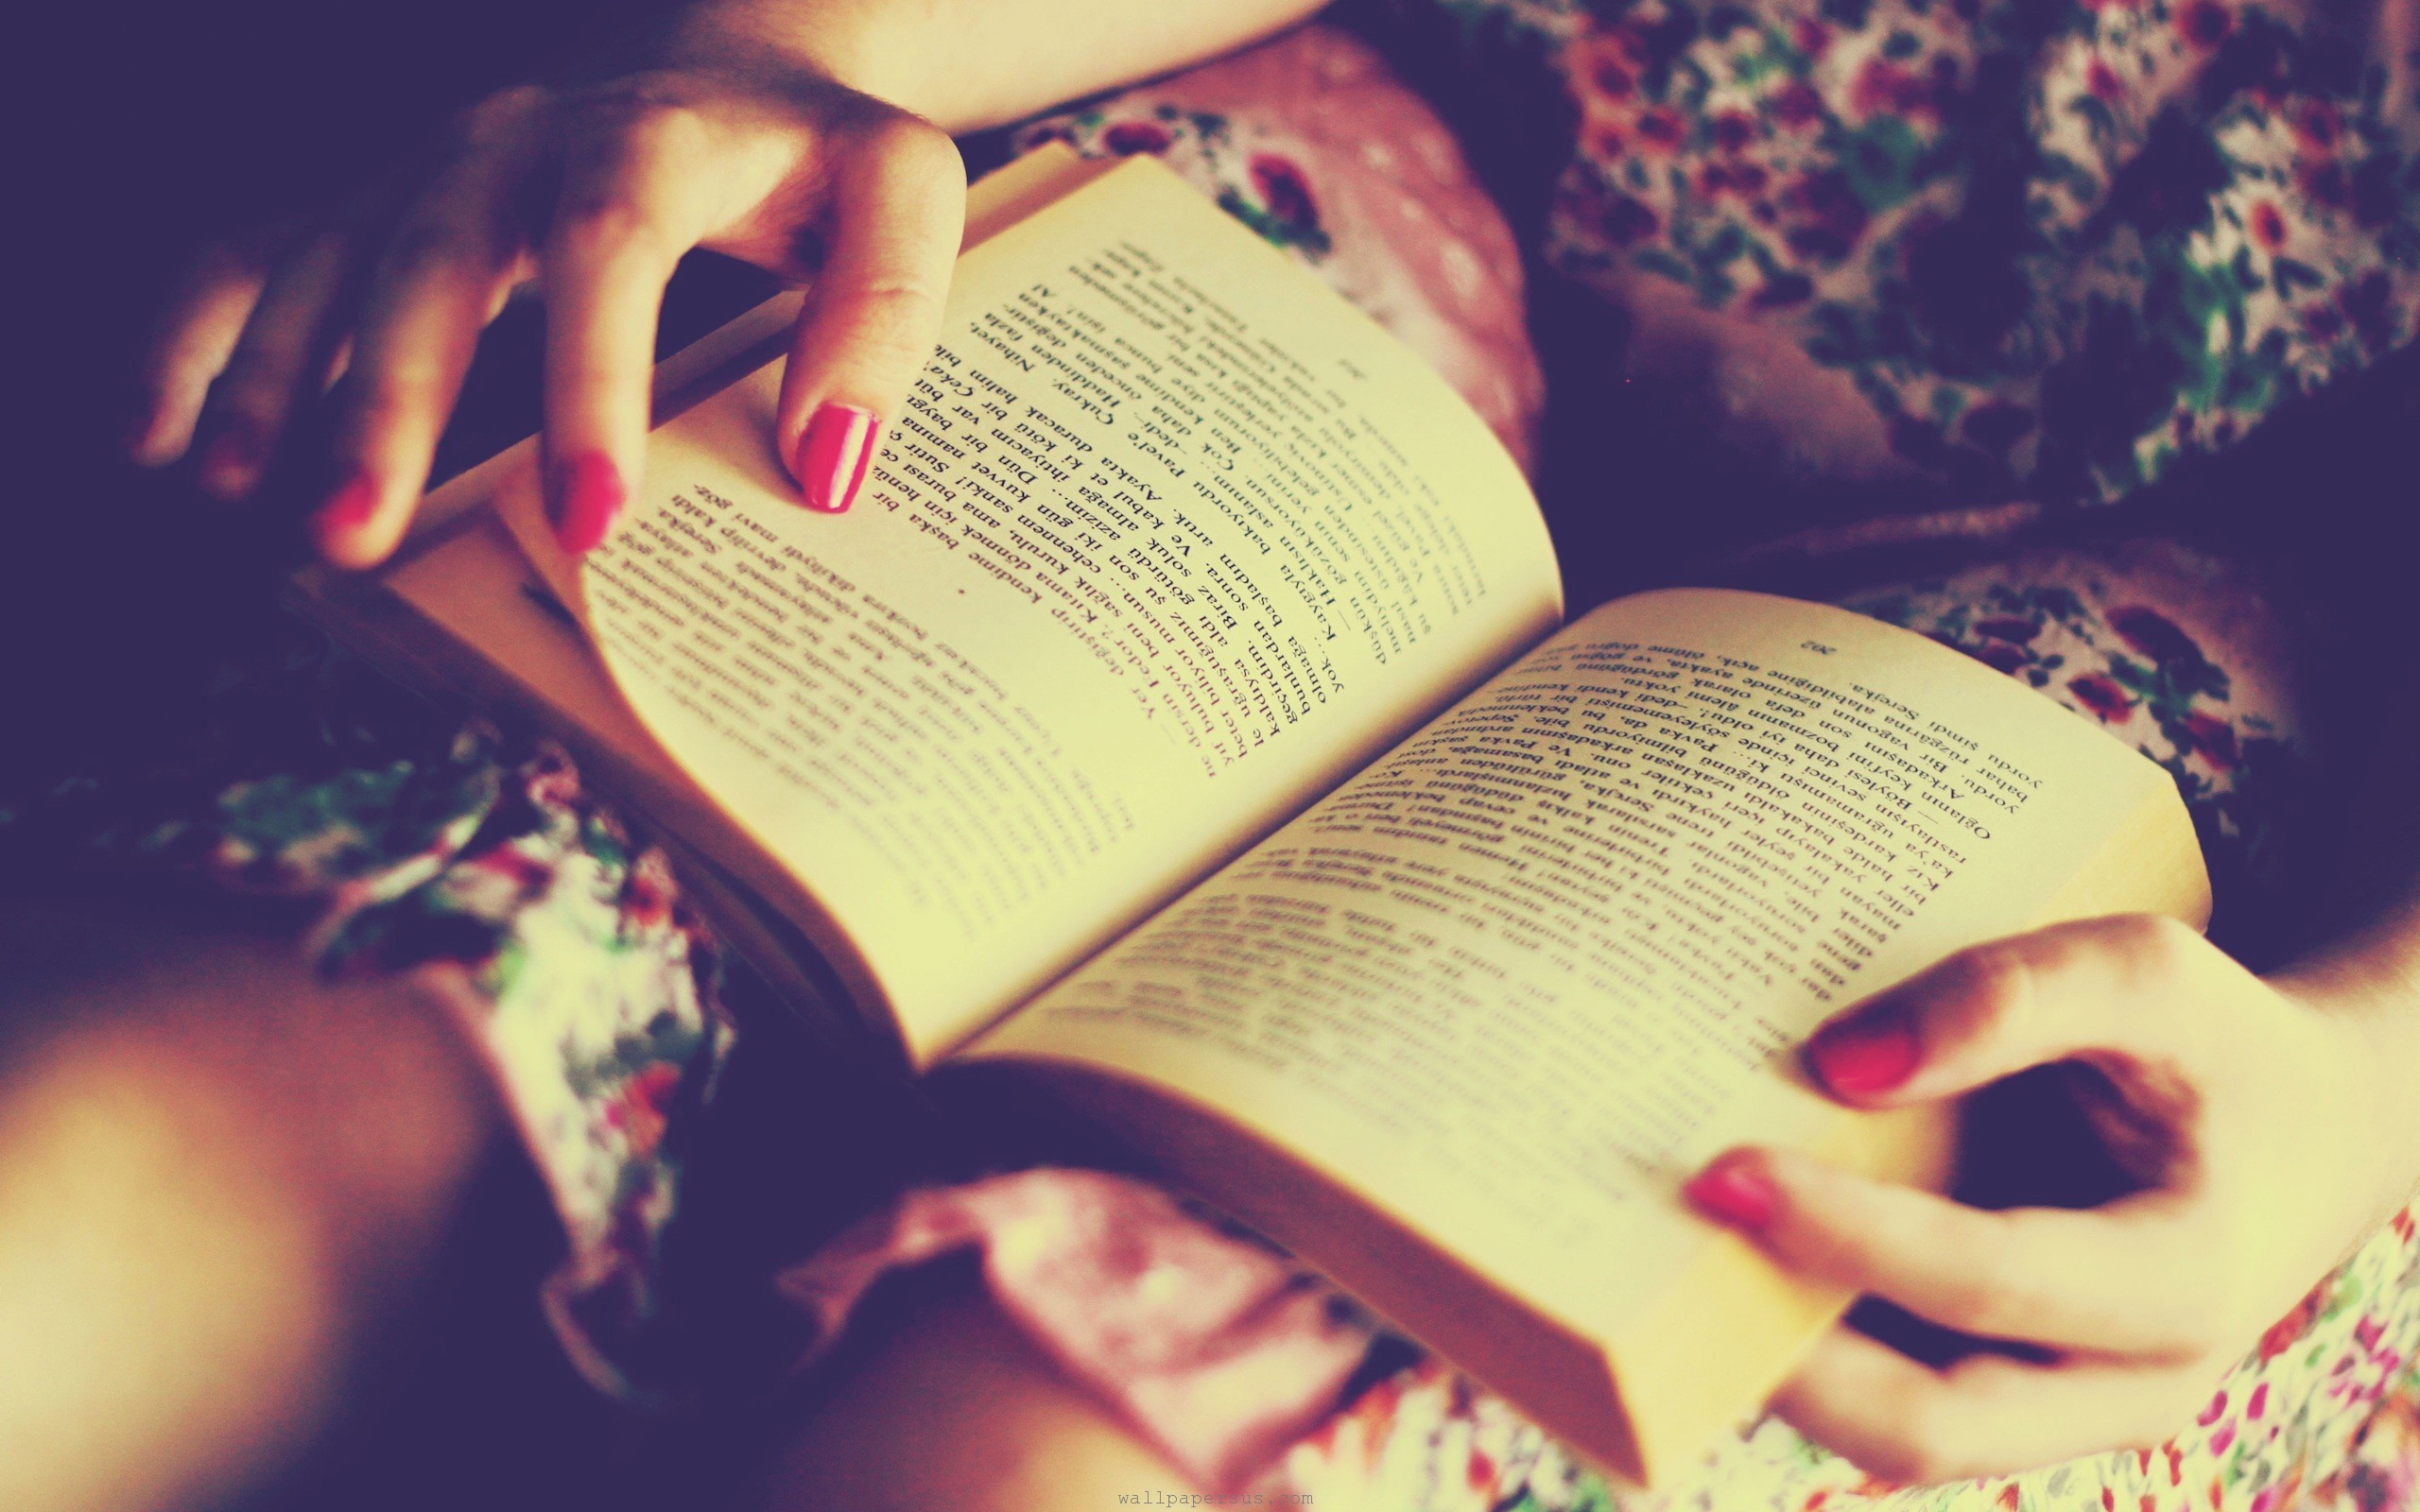 هل تجد صعوبة في اعتياد القراءة ؟ 5 خطوات لتقرأ يومياً بشغف